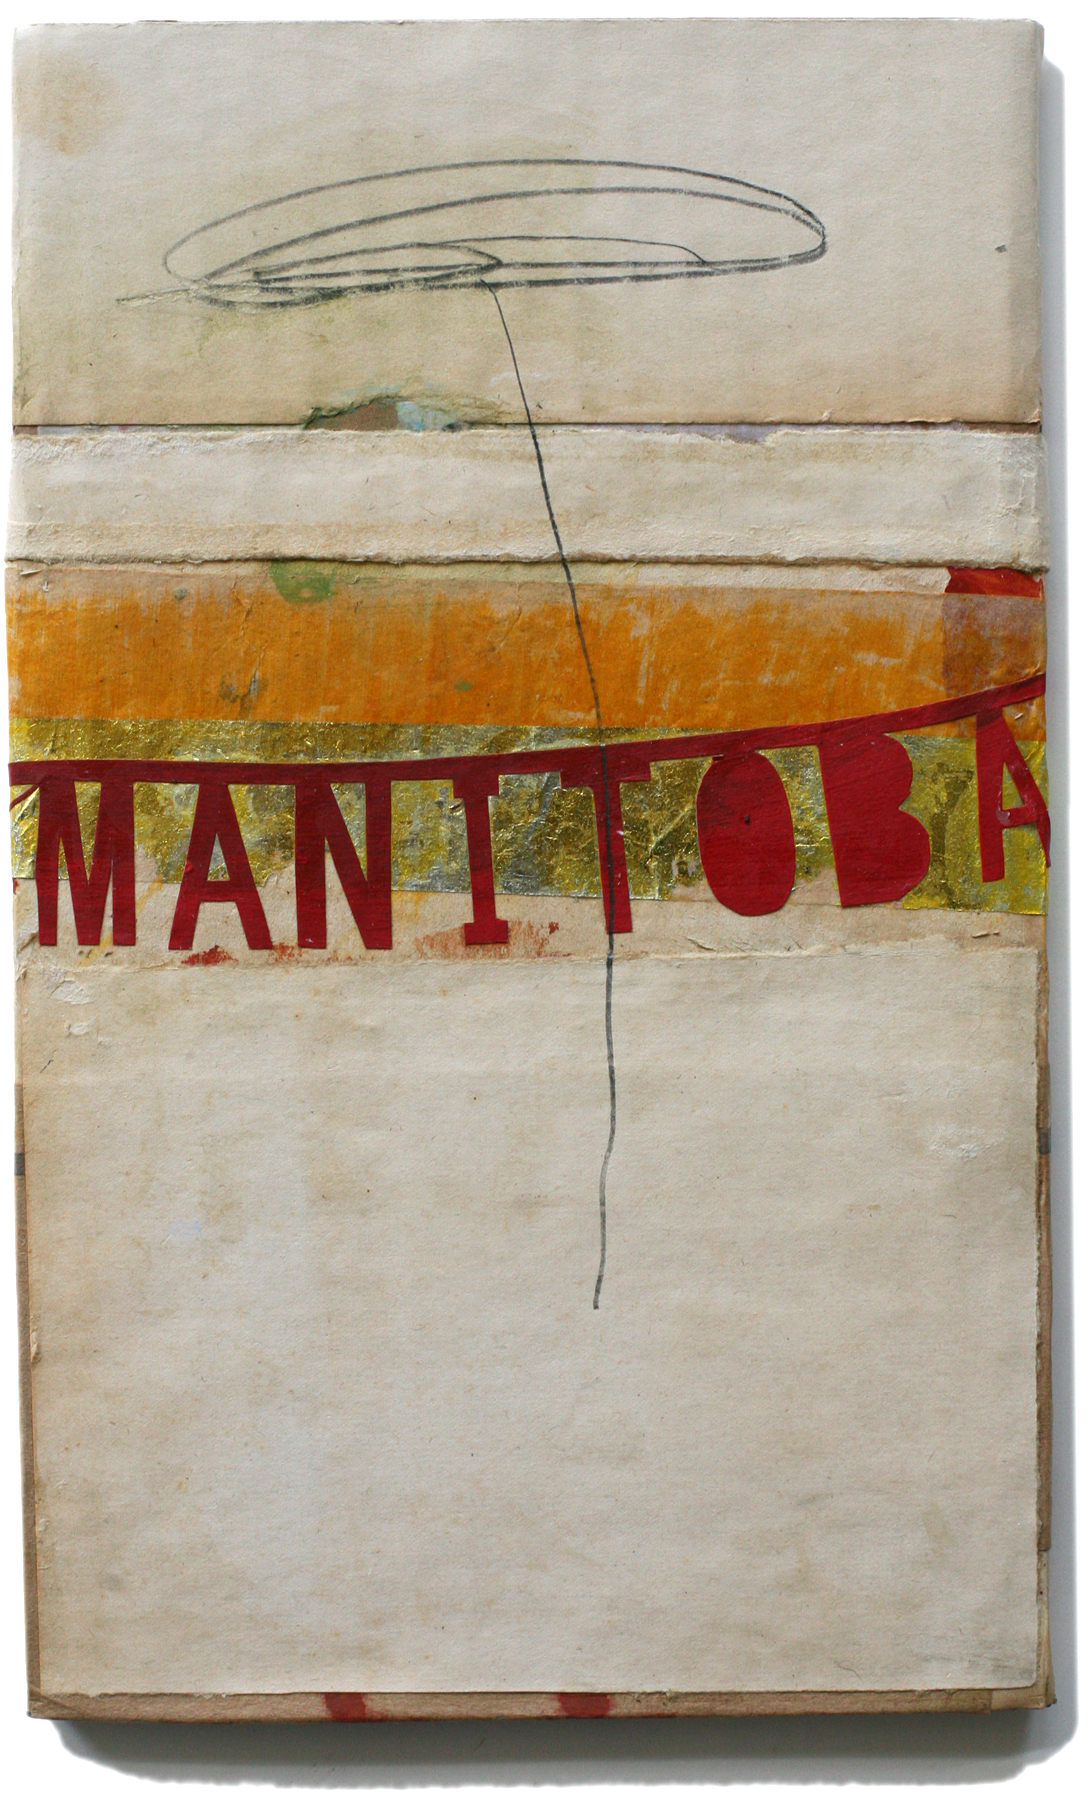 Manitoba, 10" x 6", 2008-2010 (private collection)